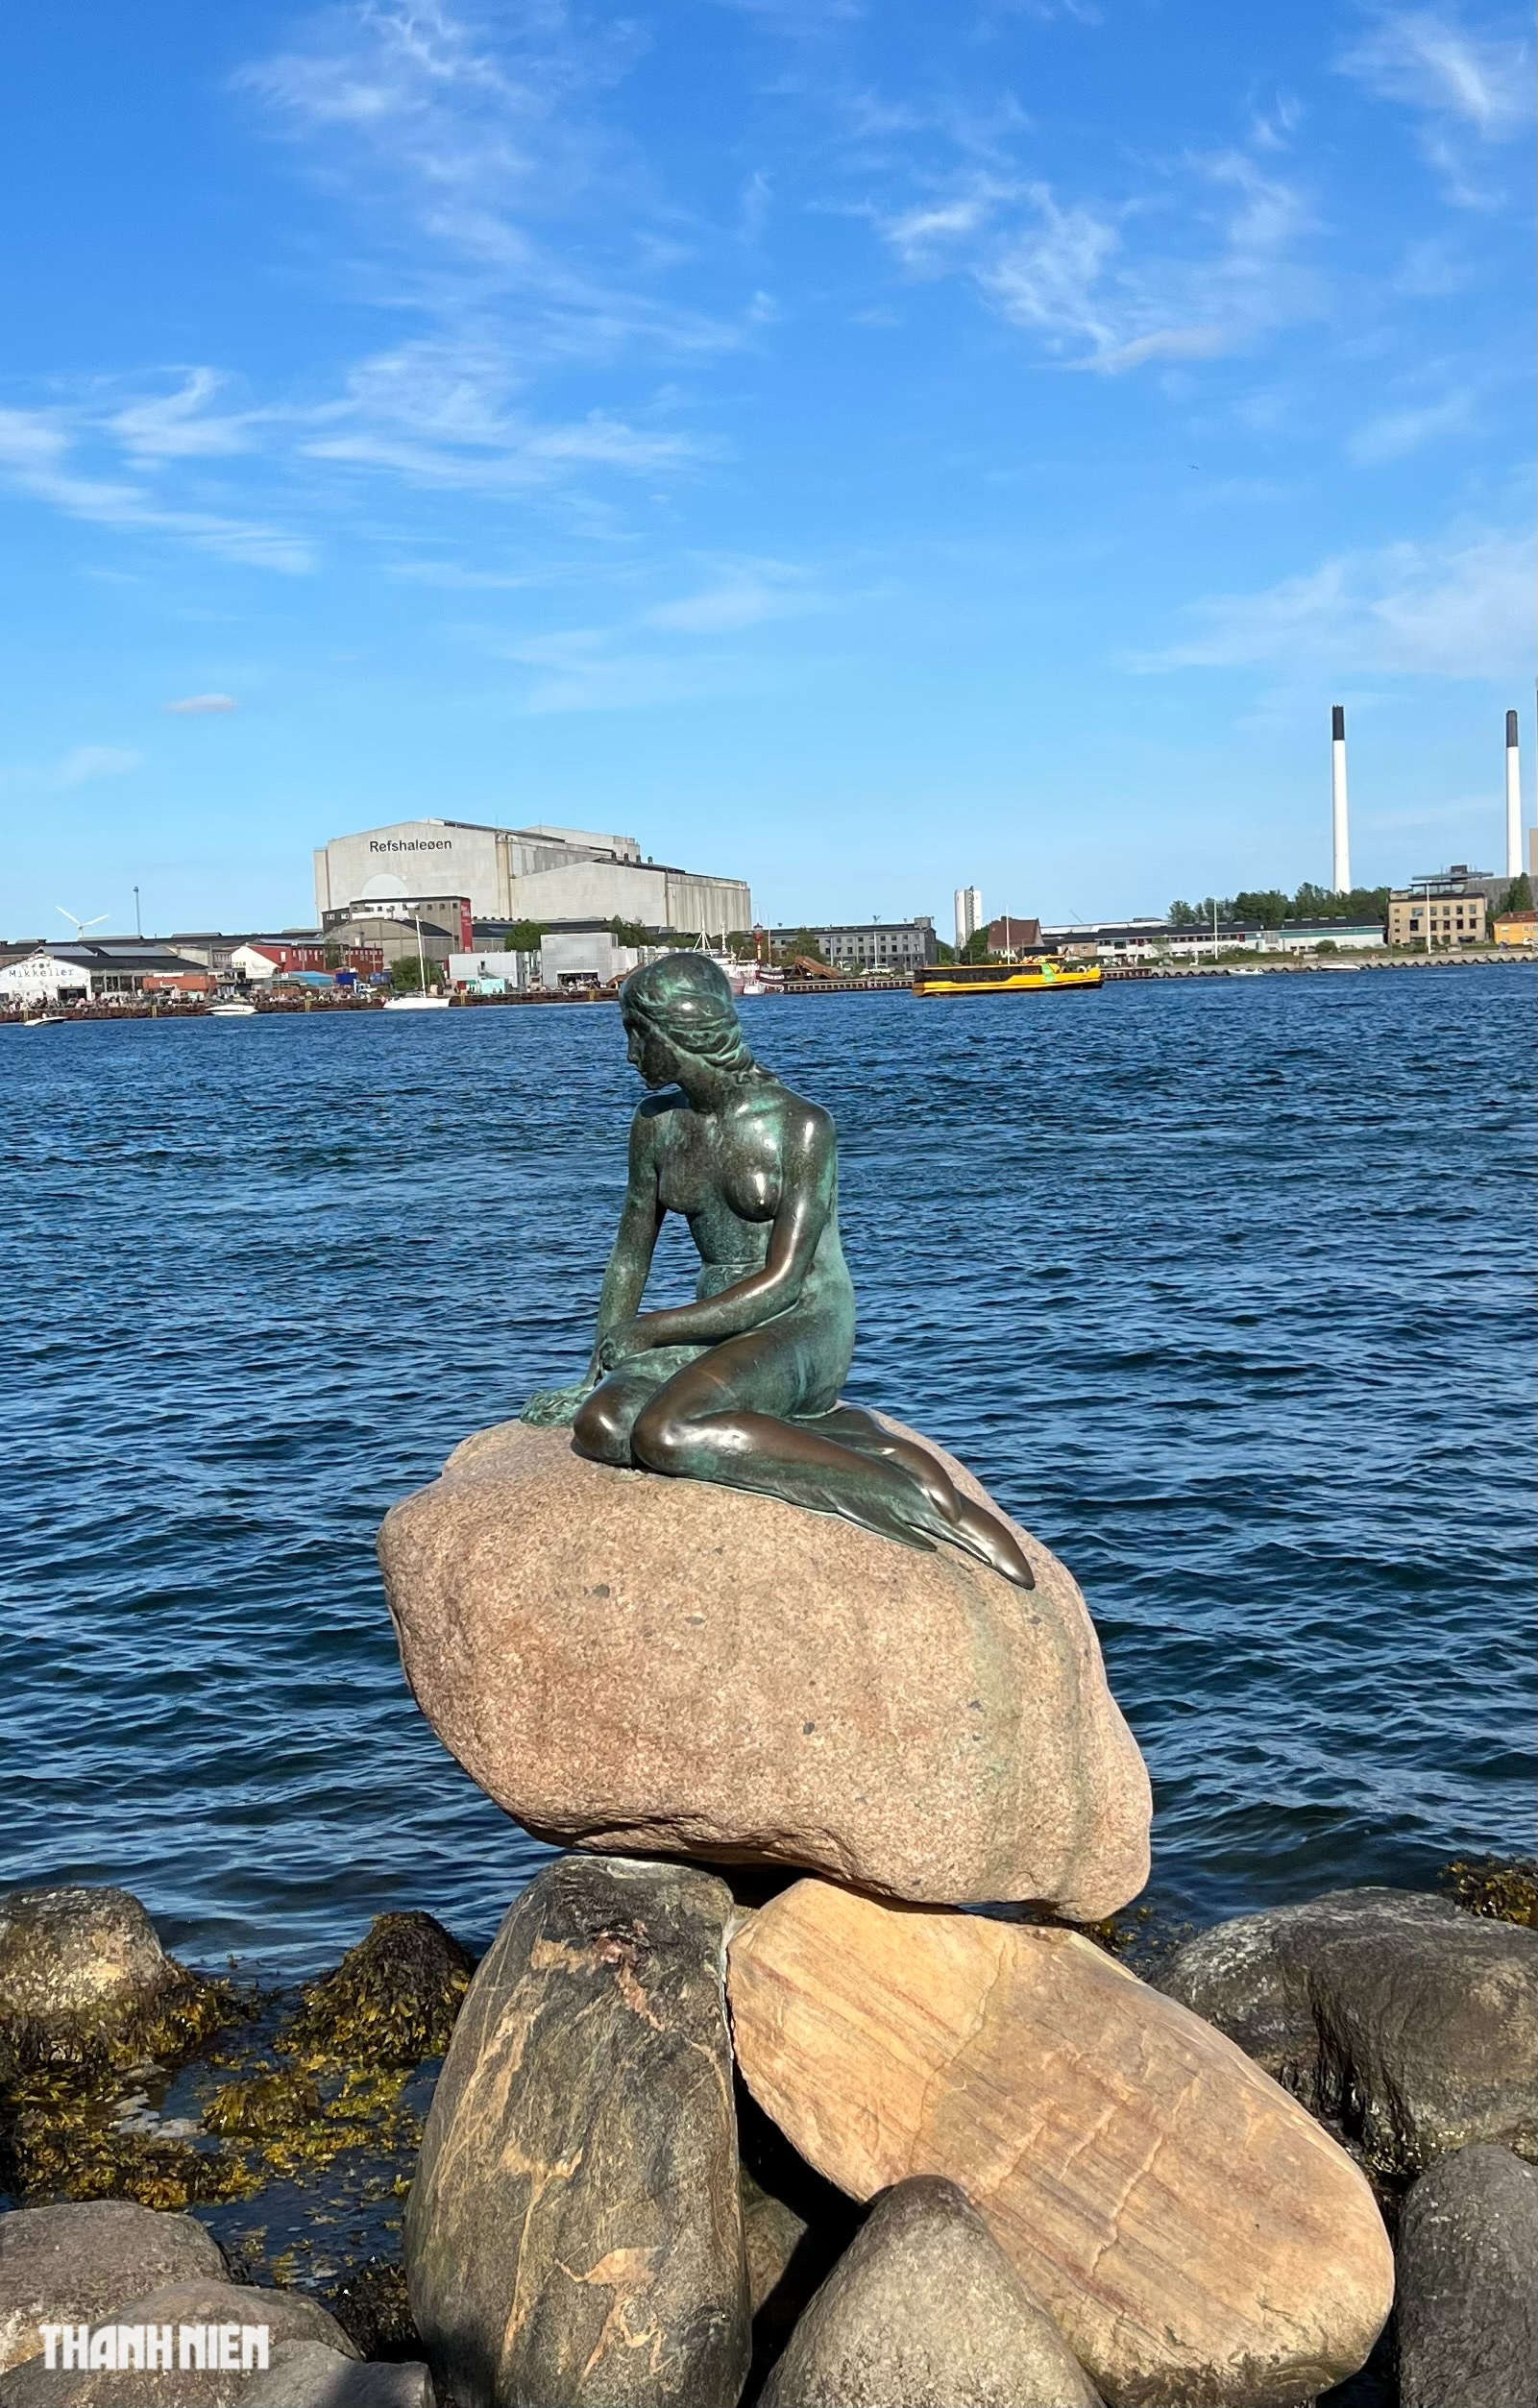 Không có gì sao khách đến Đan Mạch phải thăm Nàng tiên cá? - Ảnh 1.